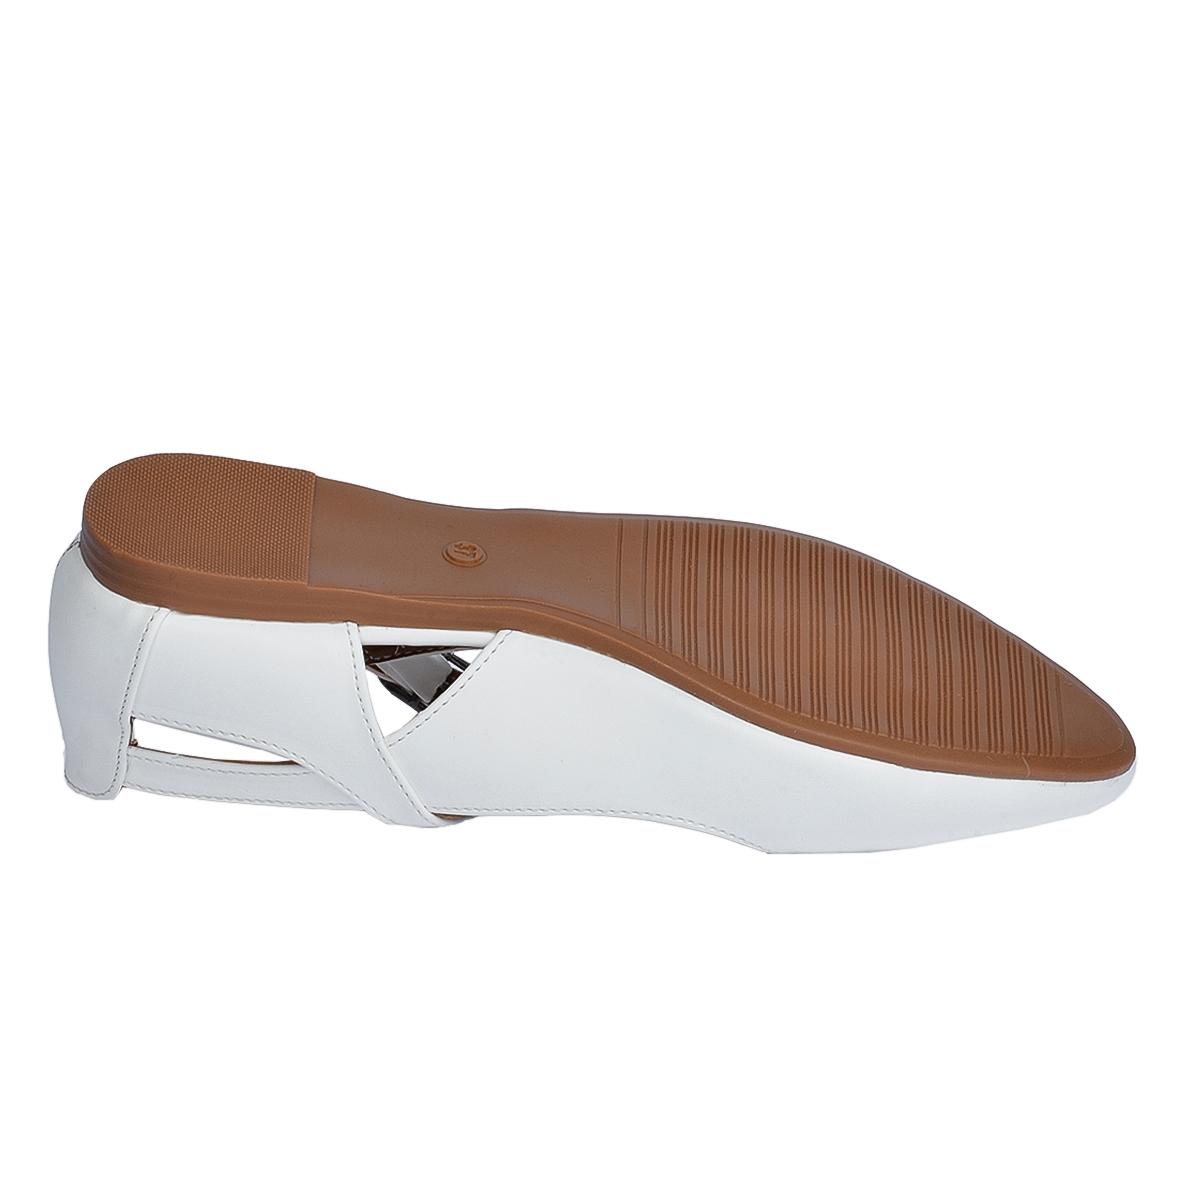 Flo 1920-201 Cilt Sandalet Bayan Babet Ayakkabı Beyaz. 5